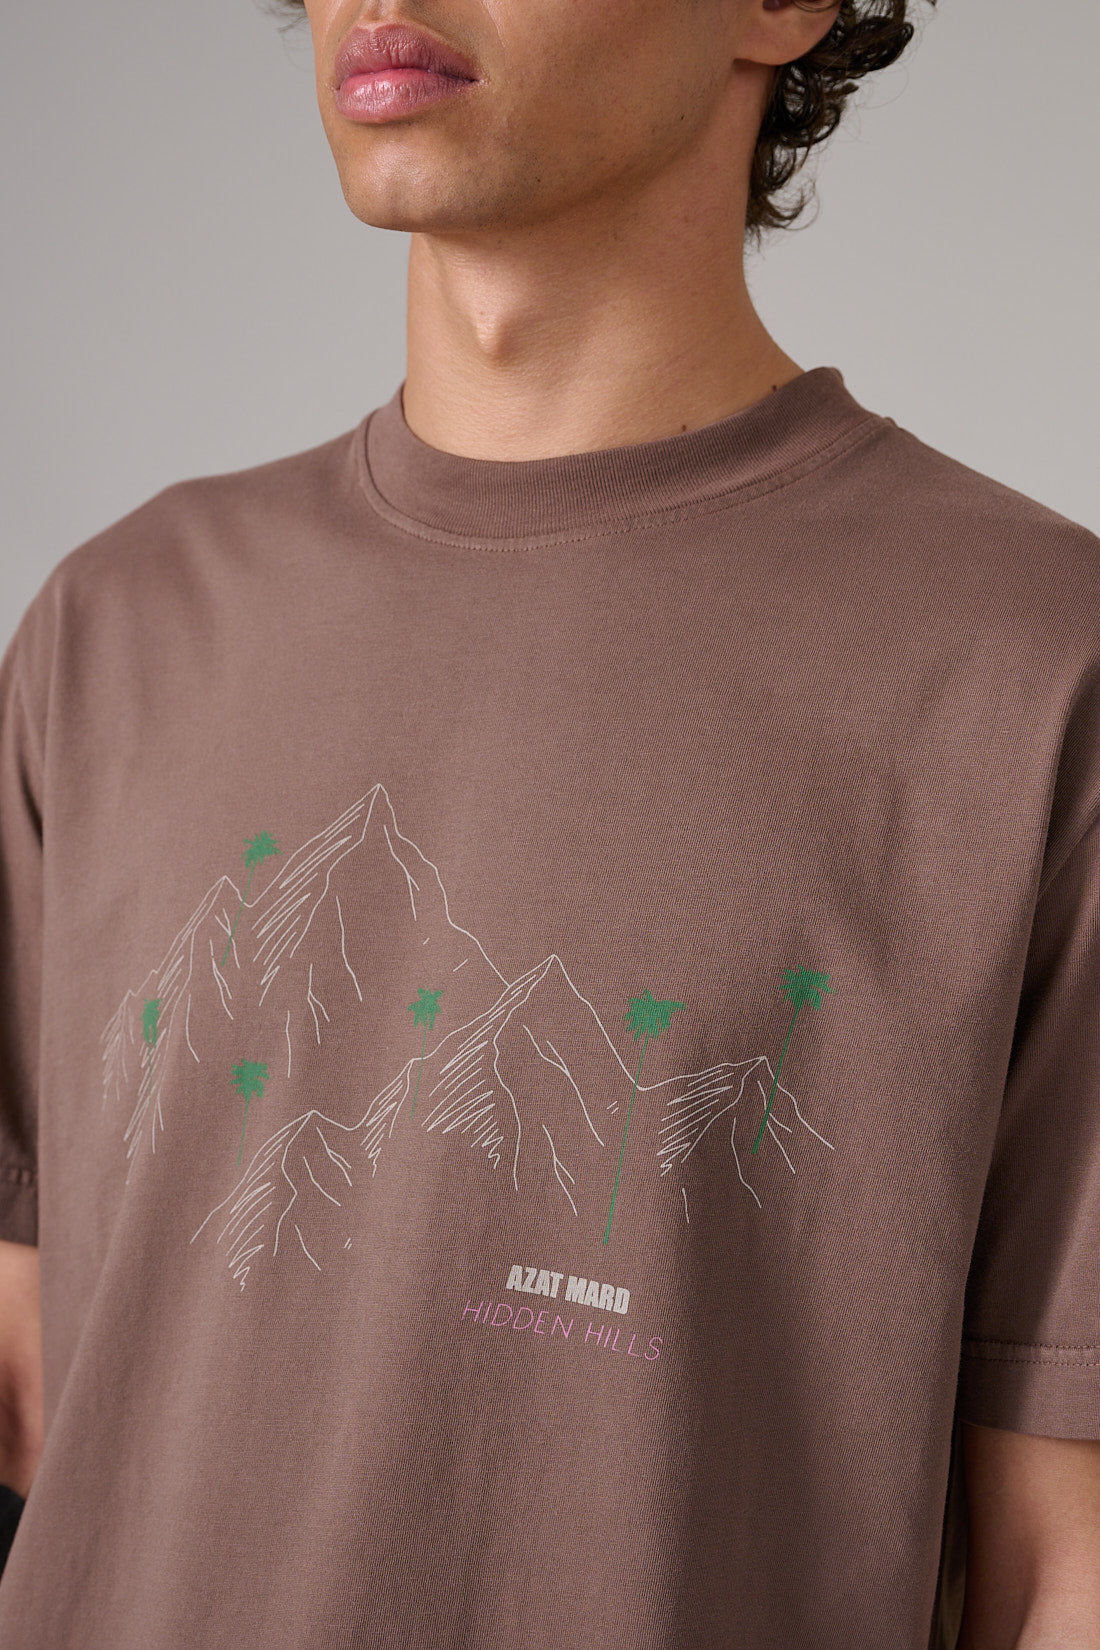 Hidden Hills T-shirt